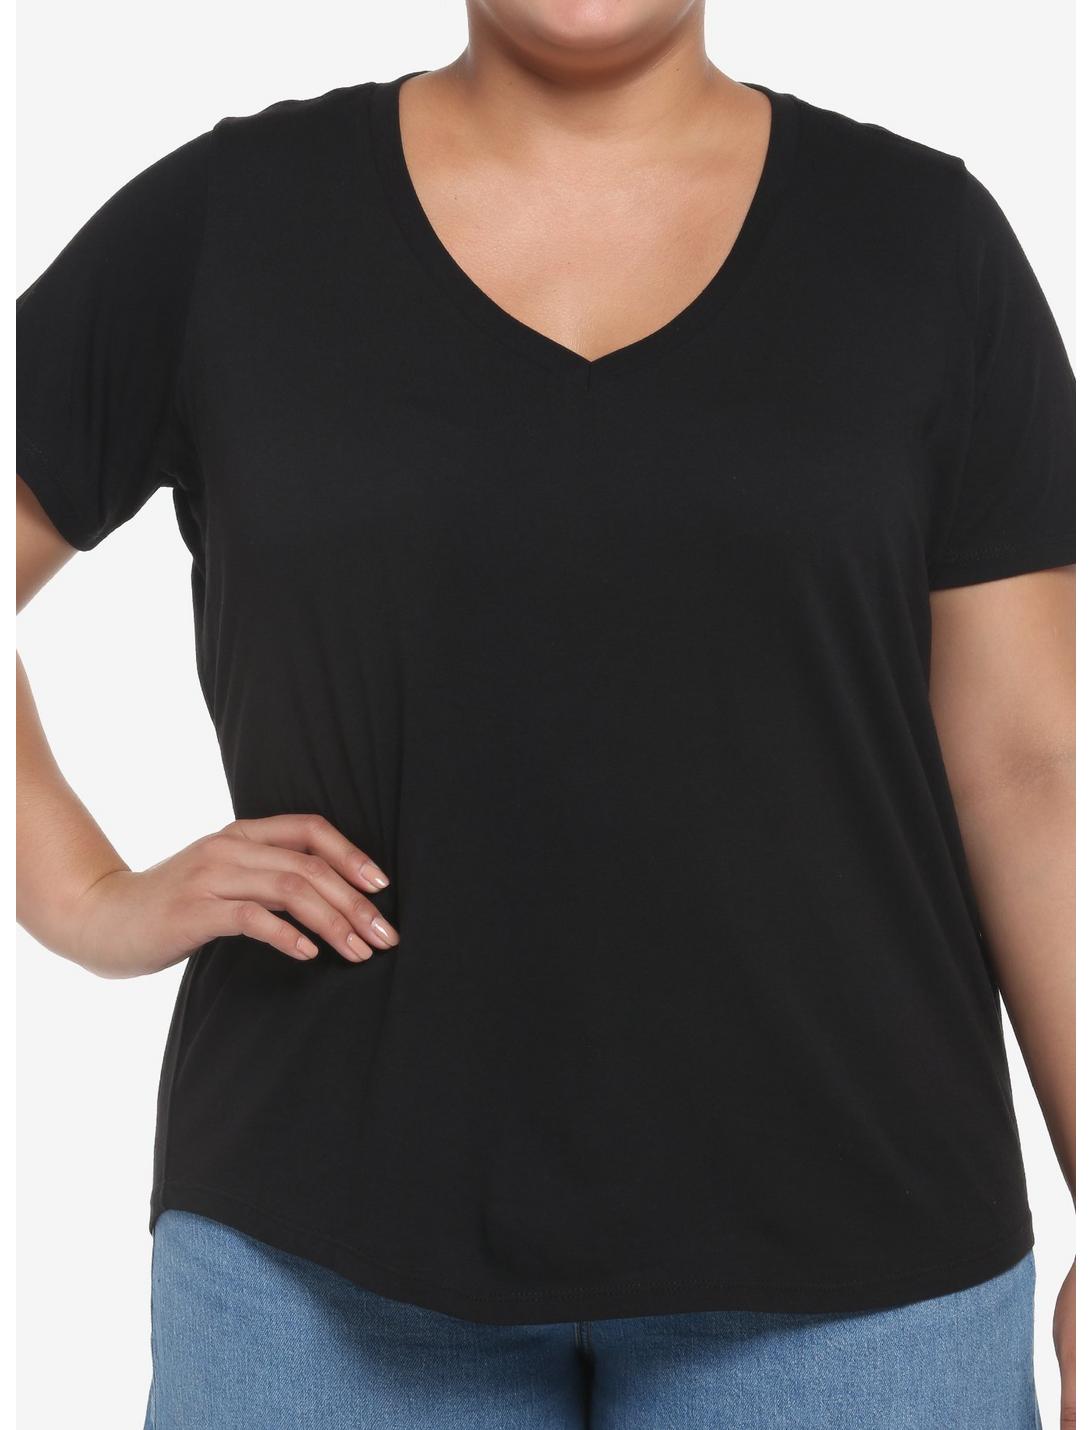 Her Universe Black V-Neck Favorite T-Shirt Plus Size, DEEP BLACK, hi-res